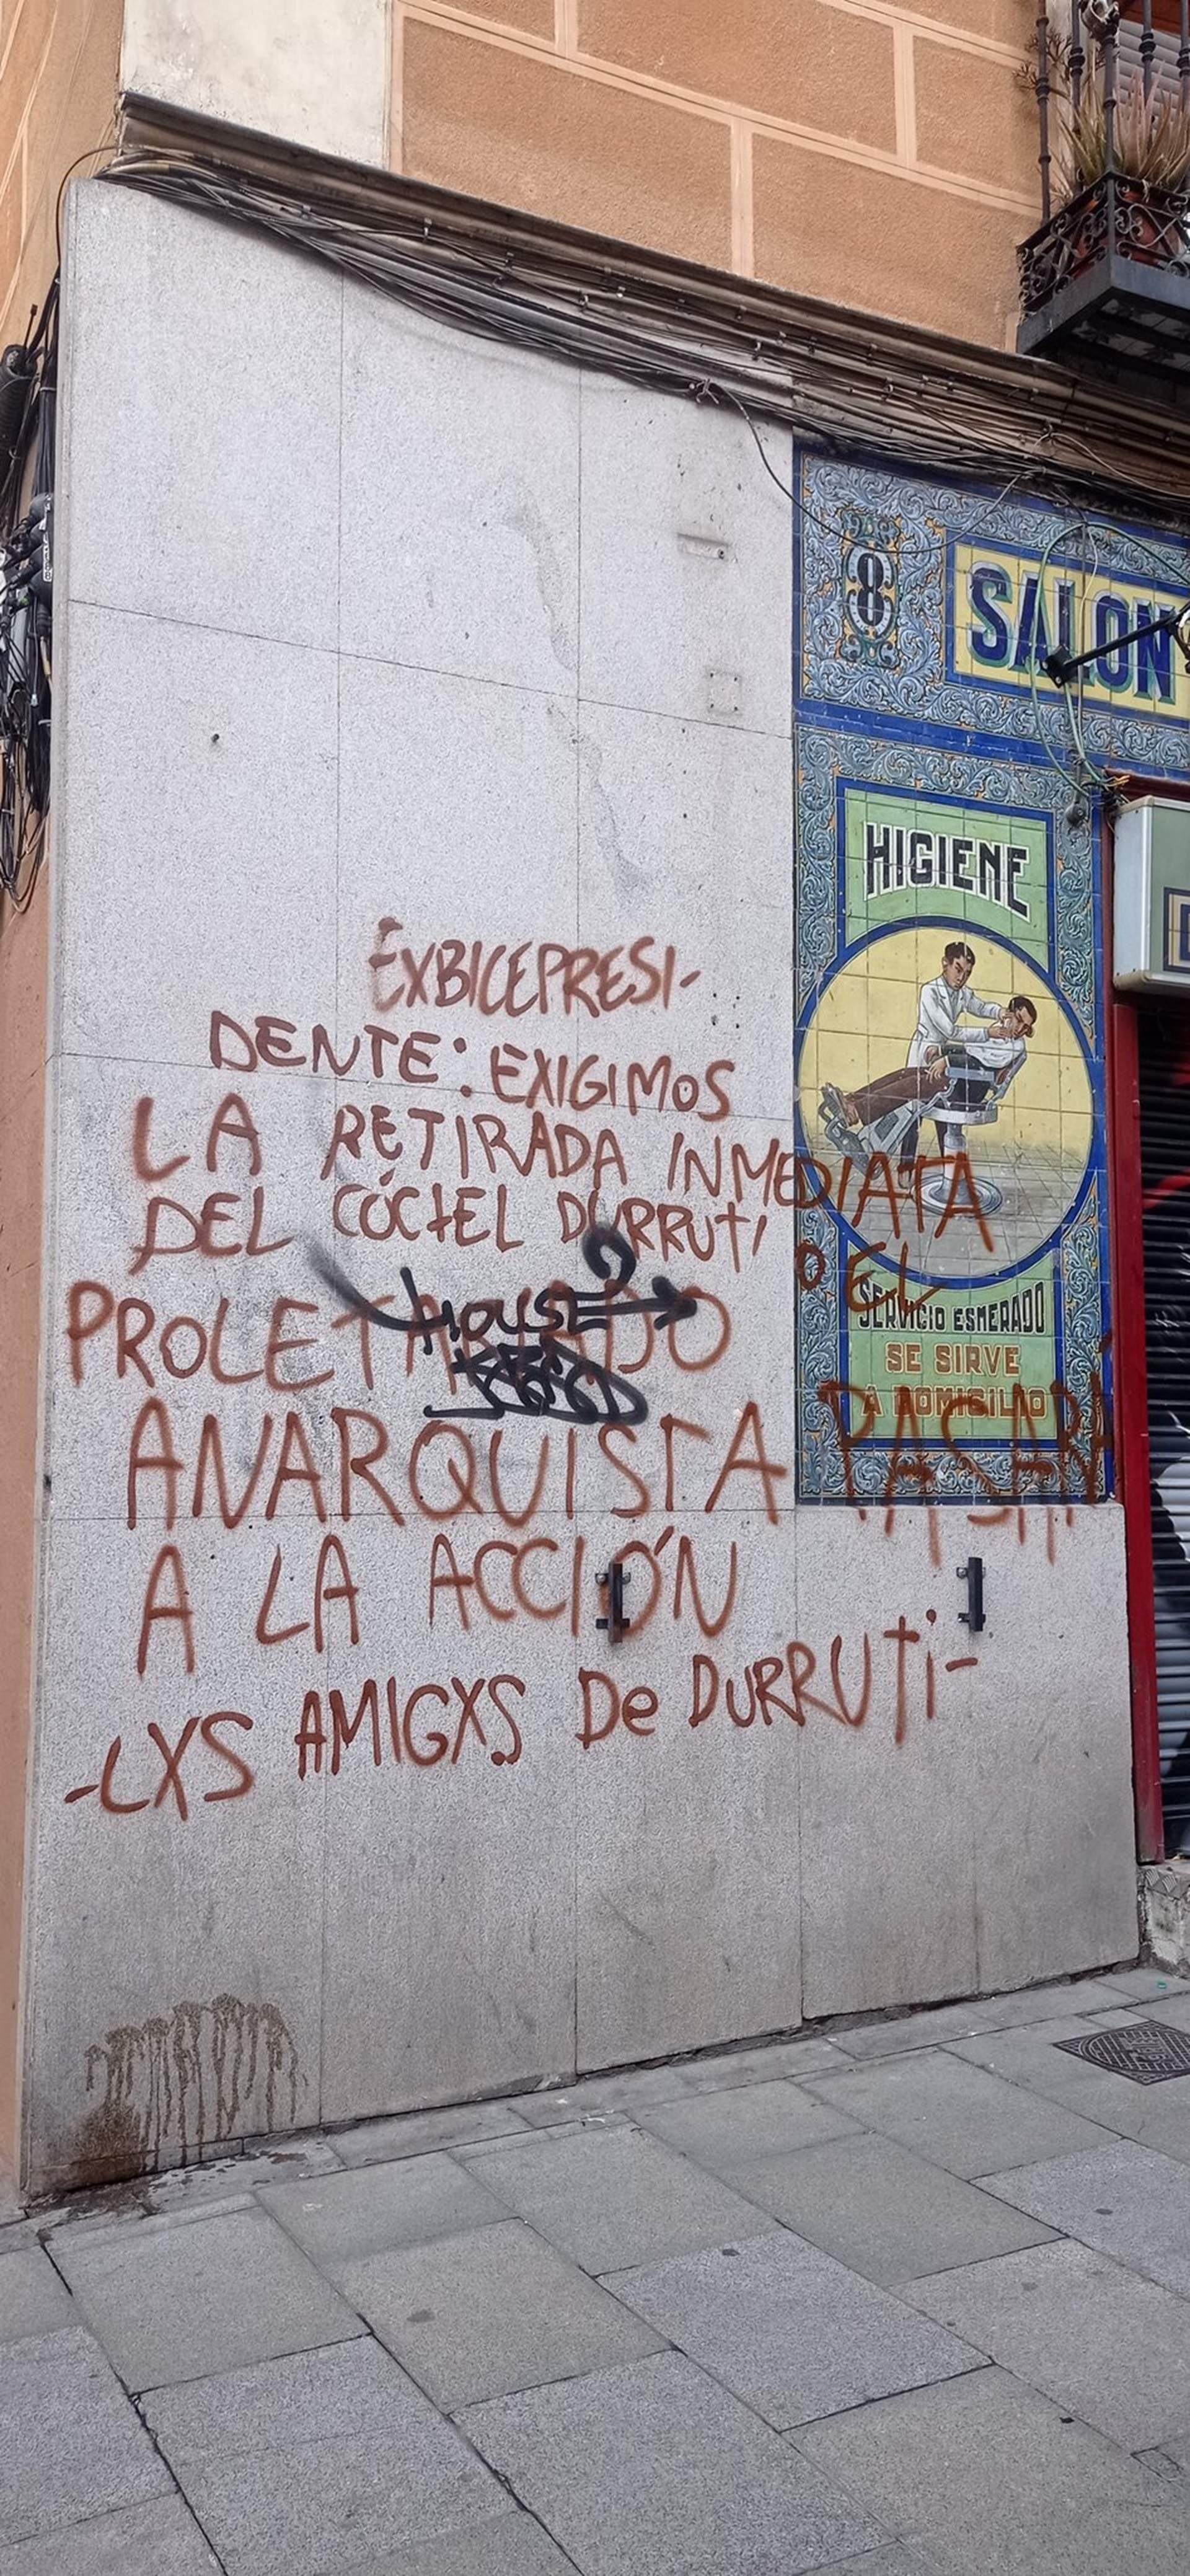 El bar de Pablo Iglesias en Lavapiés, amenazado el día antes de la apertura: "Retirada del cóctel de Durruti"